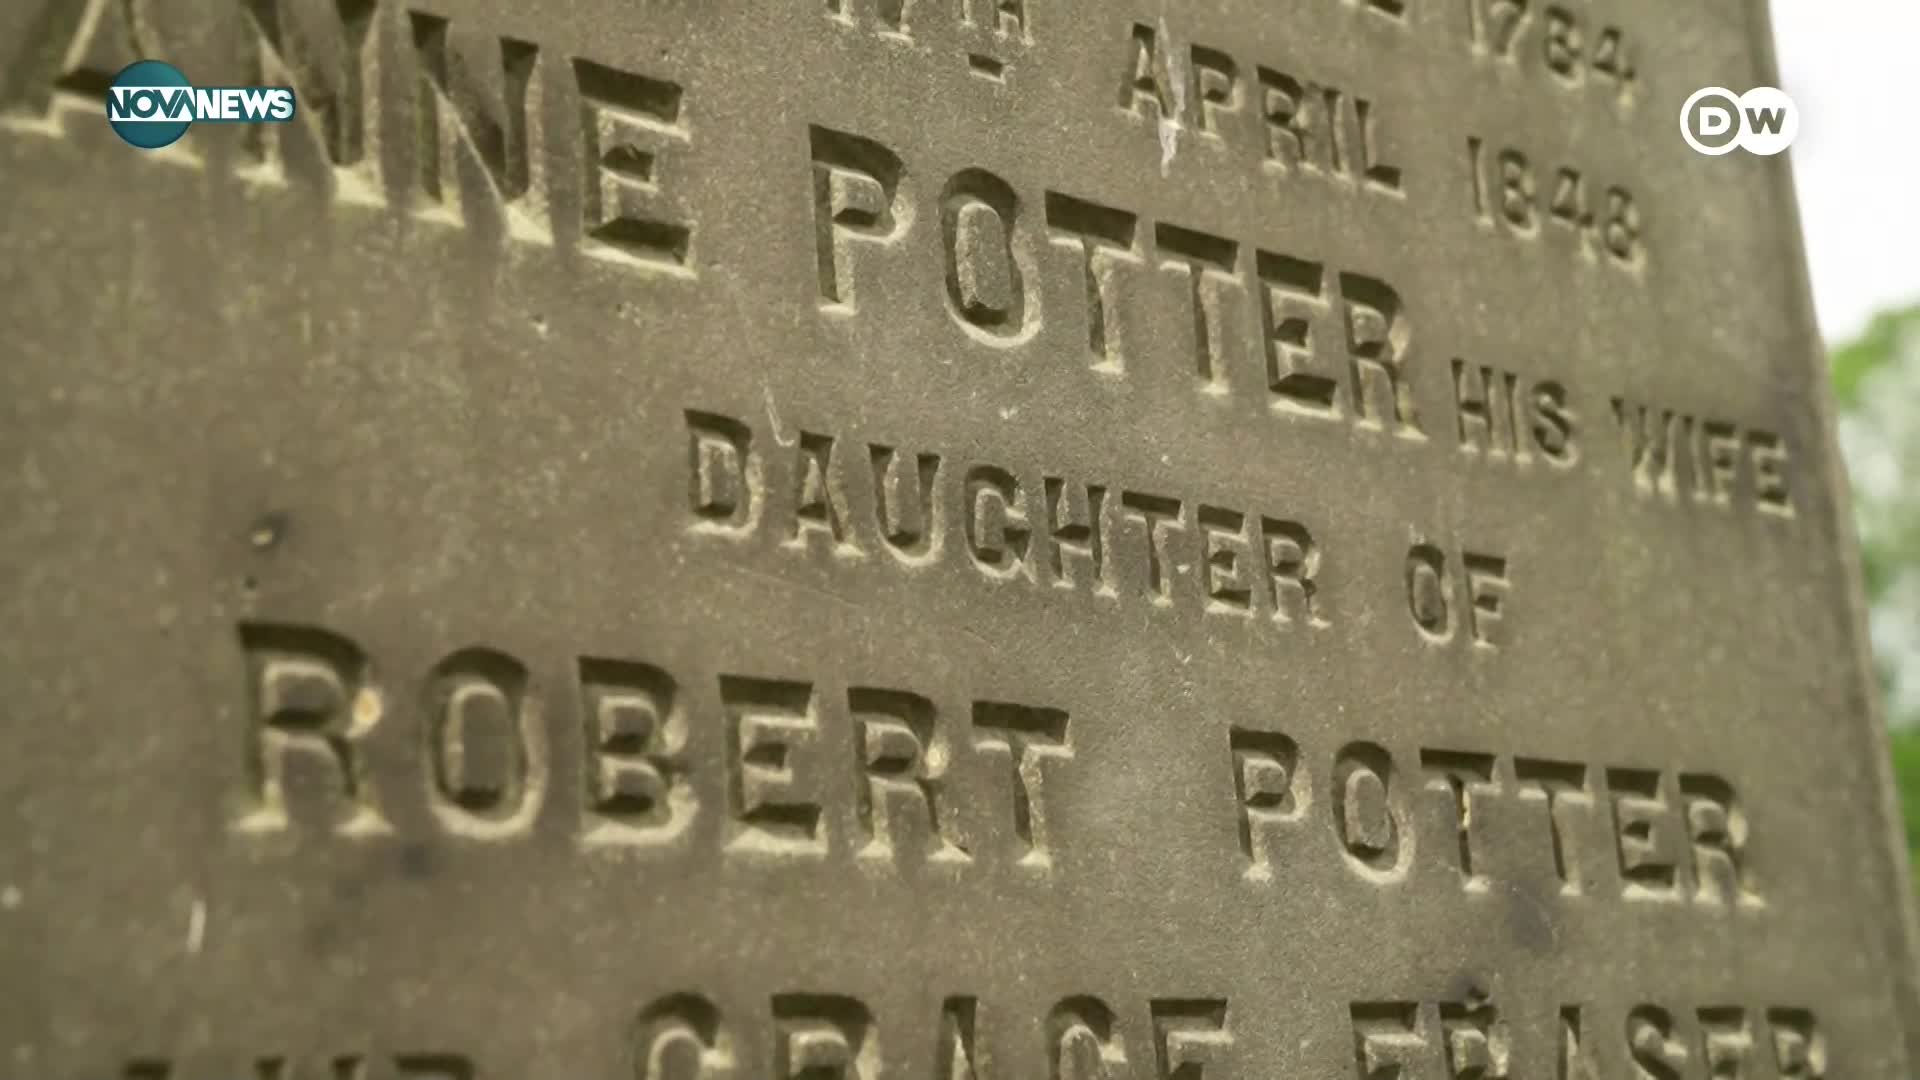 Герои от Хари Потър носят имена на мъртъвци от надгробни плочи в Единбург